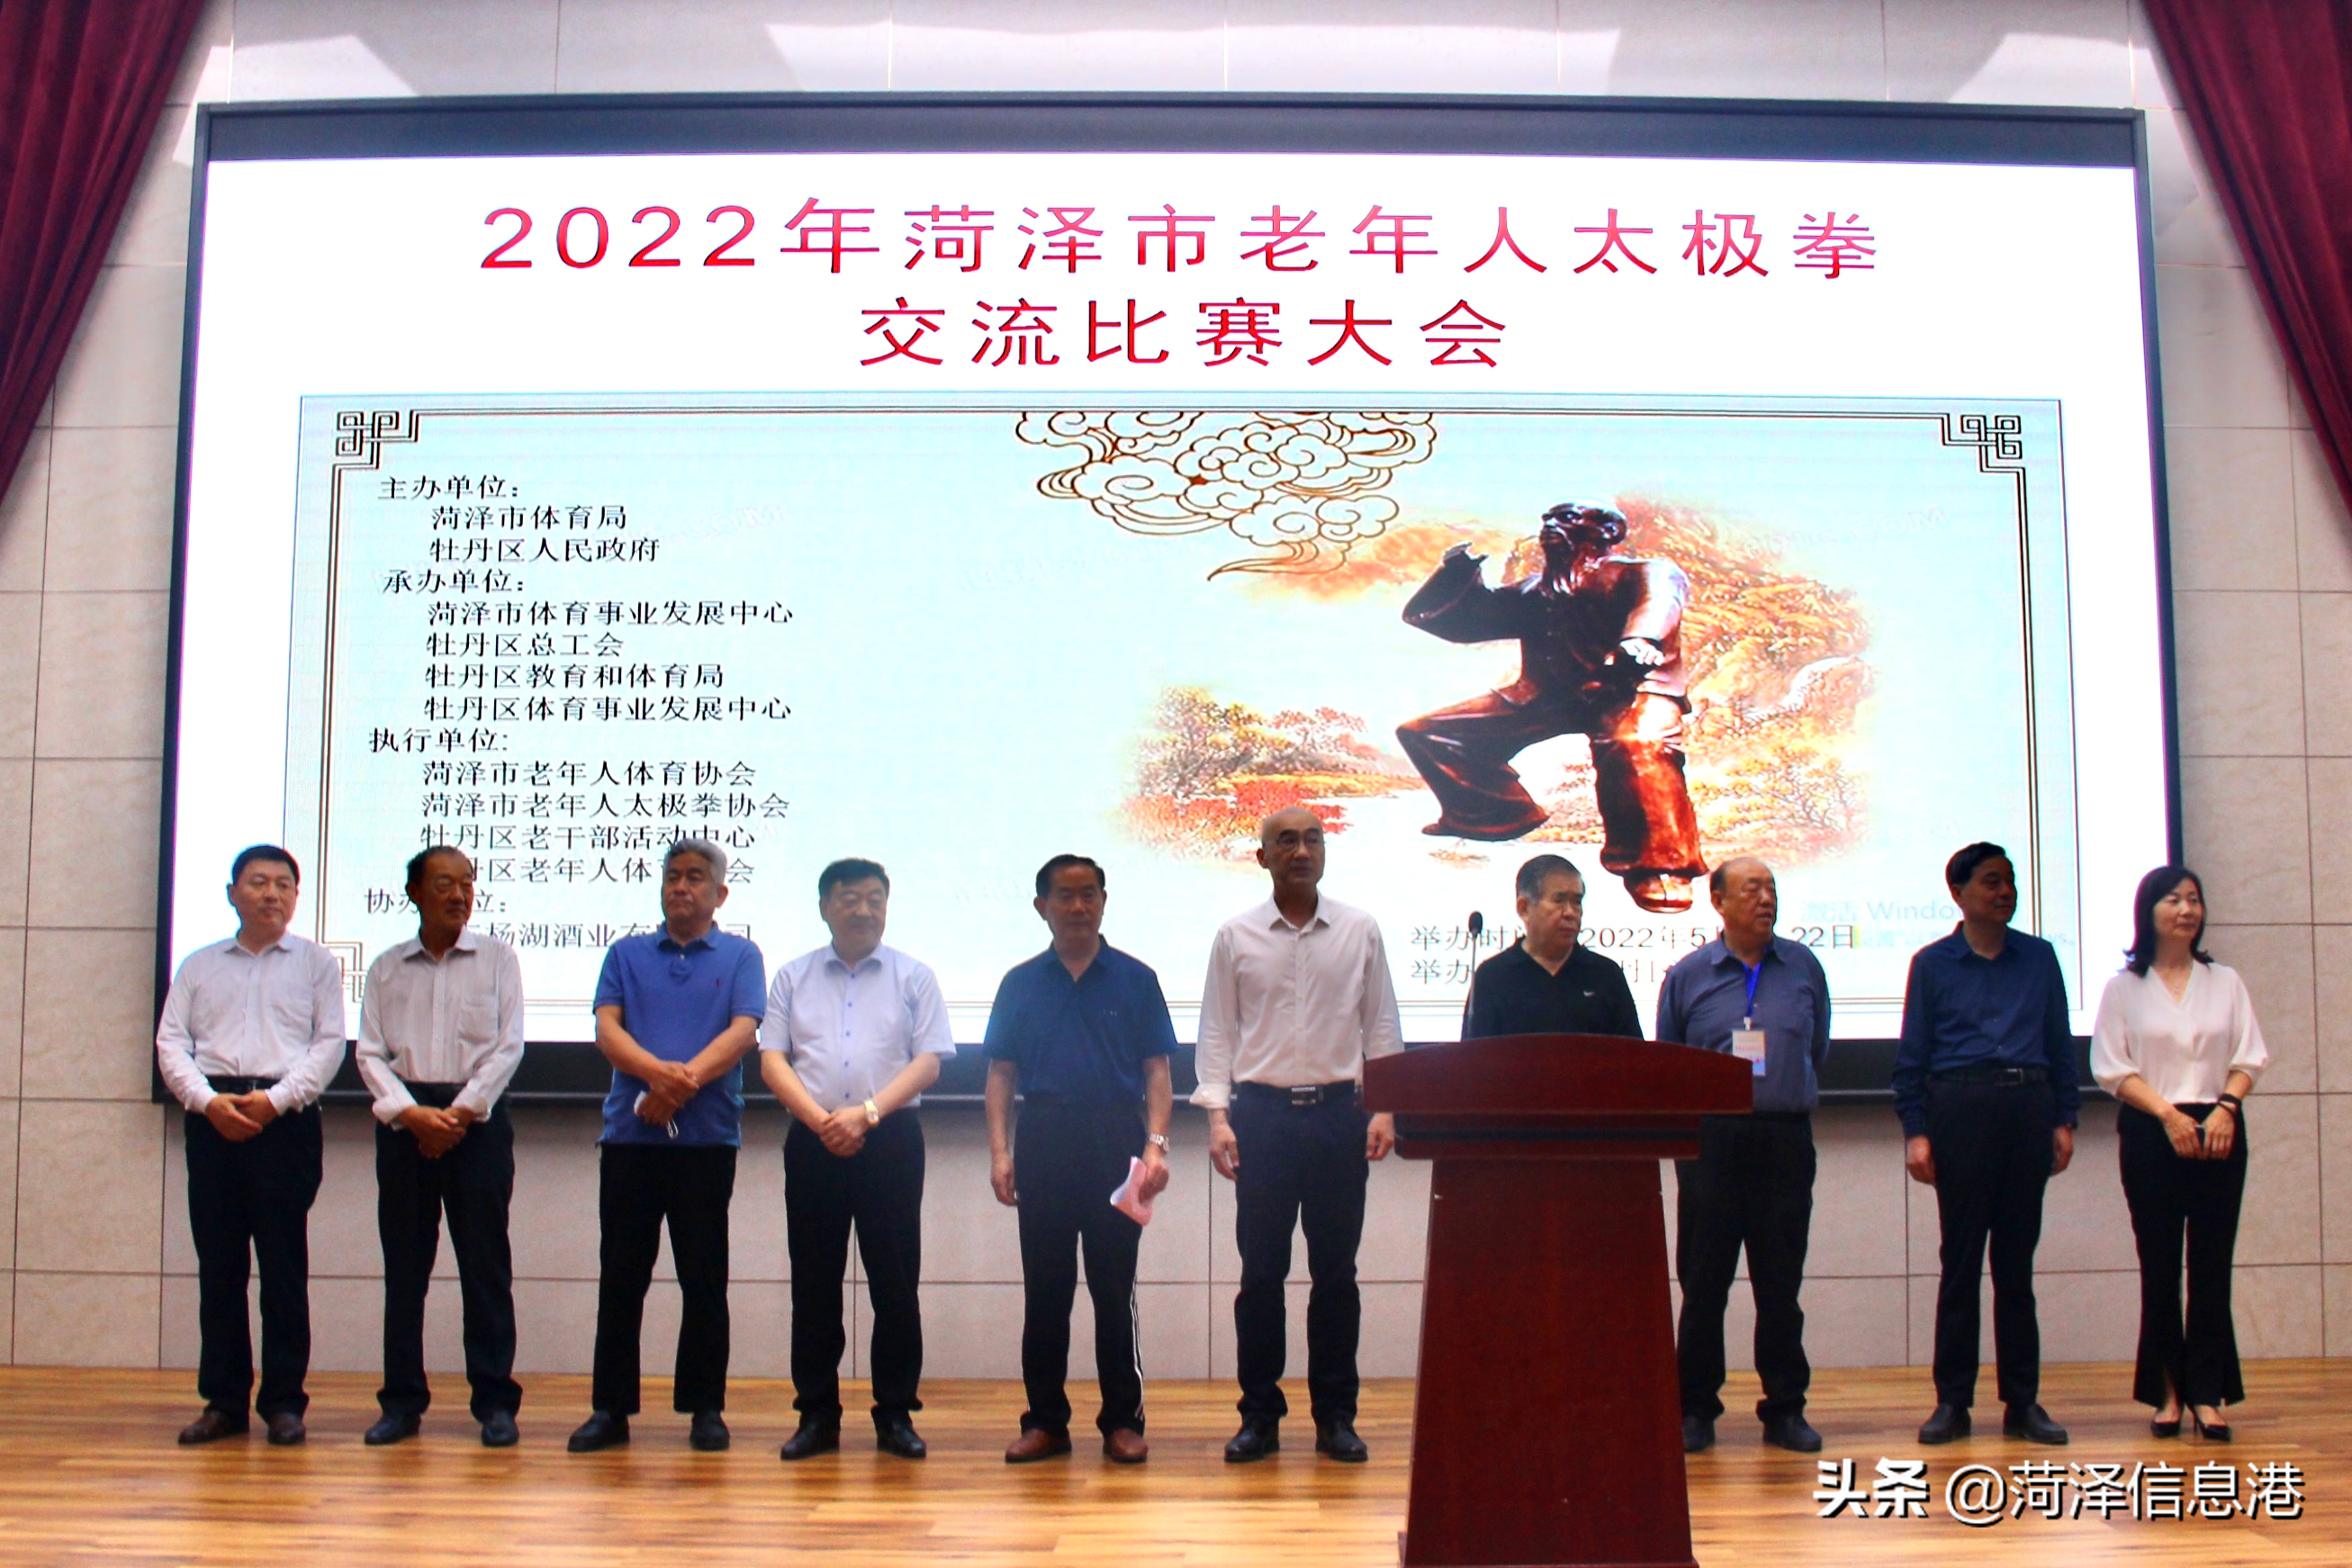 2022菏泽市老年人太极拳(剑)比赛隆重举行